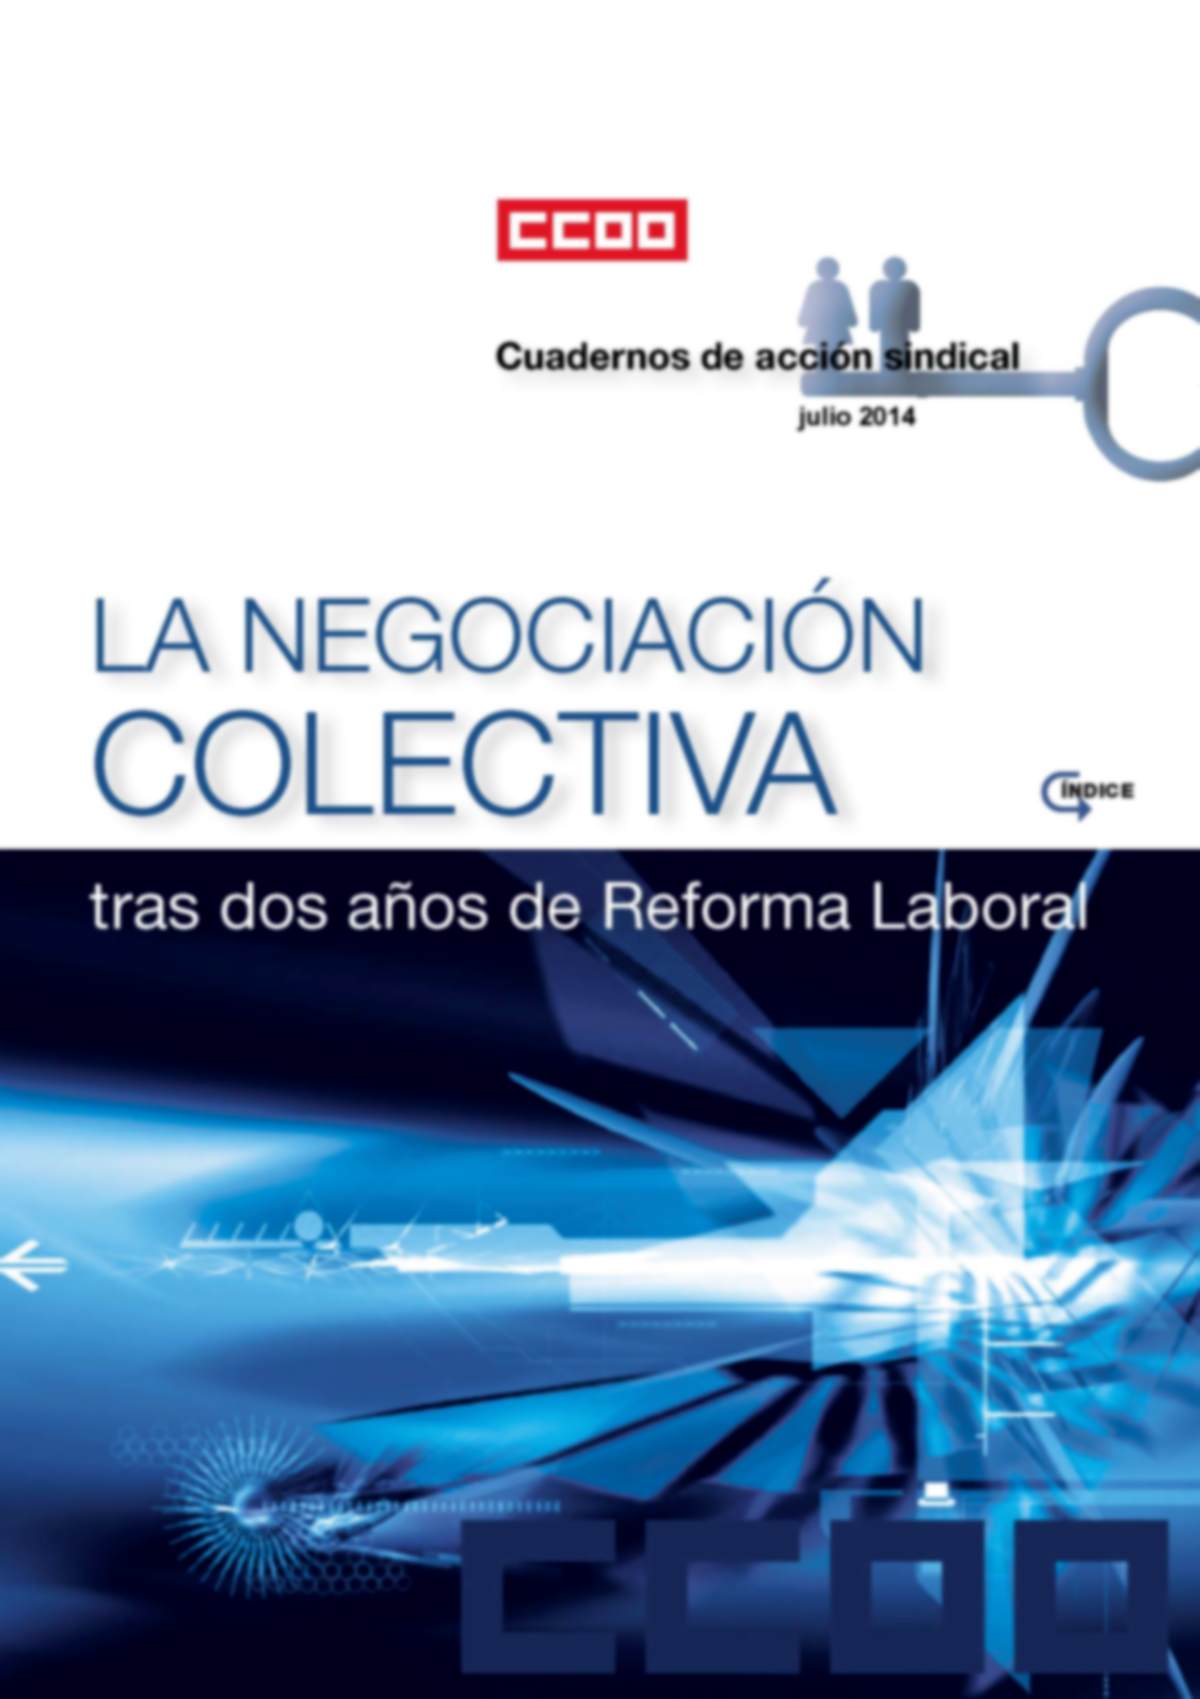 La Negociacin Colectiva tras dos aos de Reforma Laboral